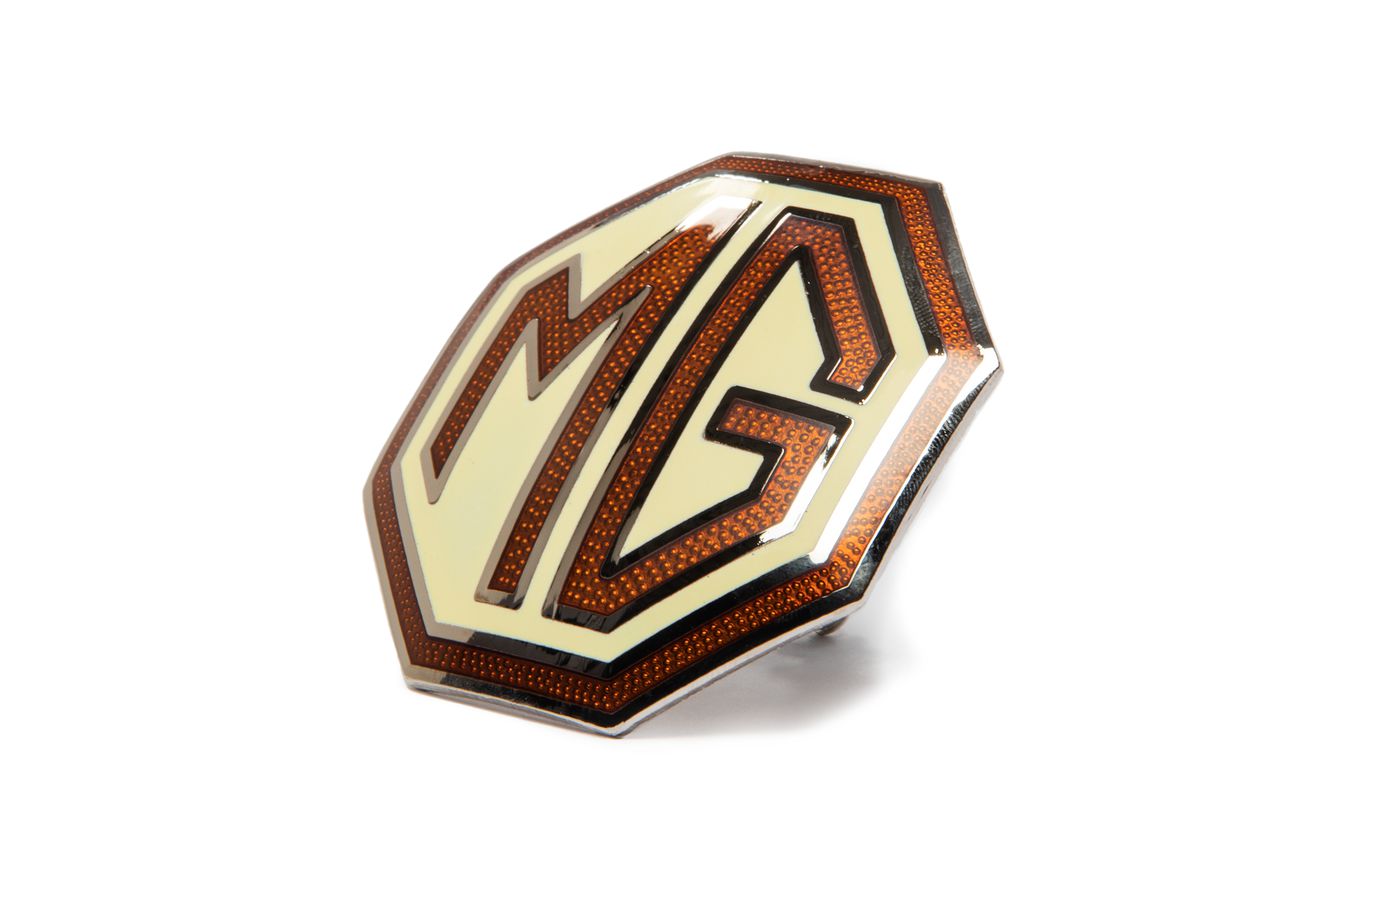 MG Emblem
MG badge
Emblème MG
Emblema MG